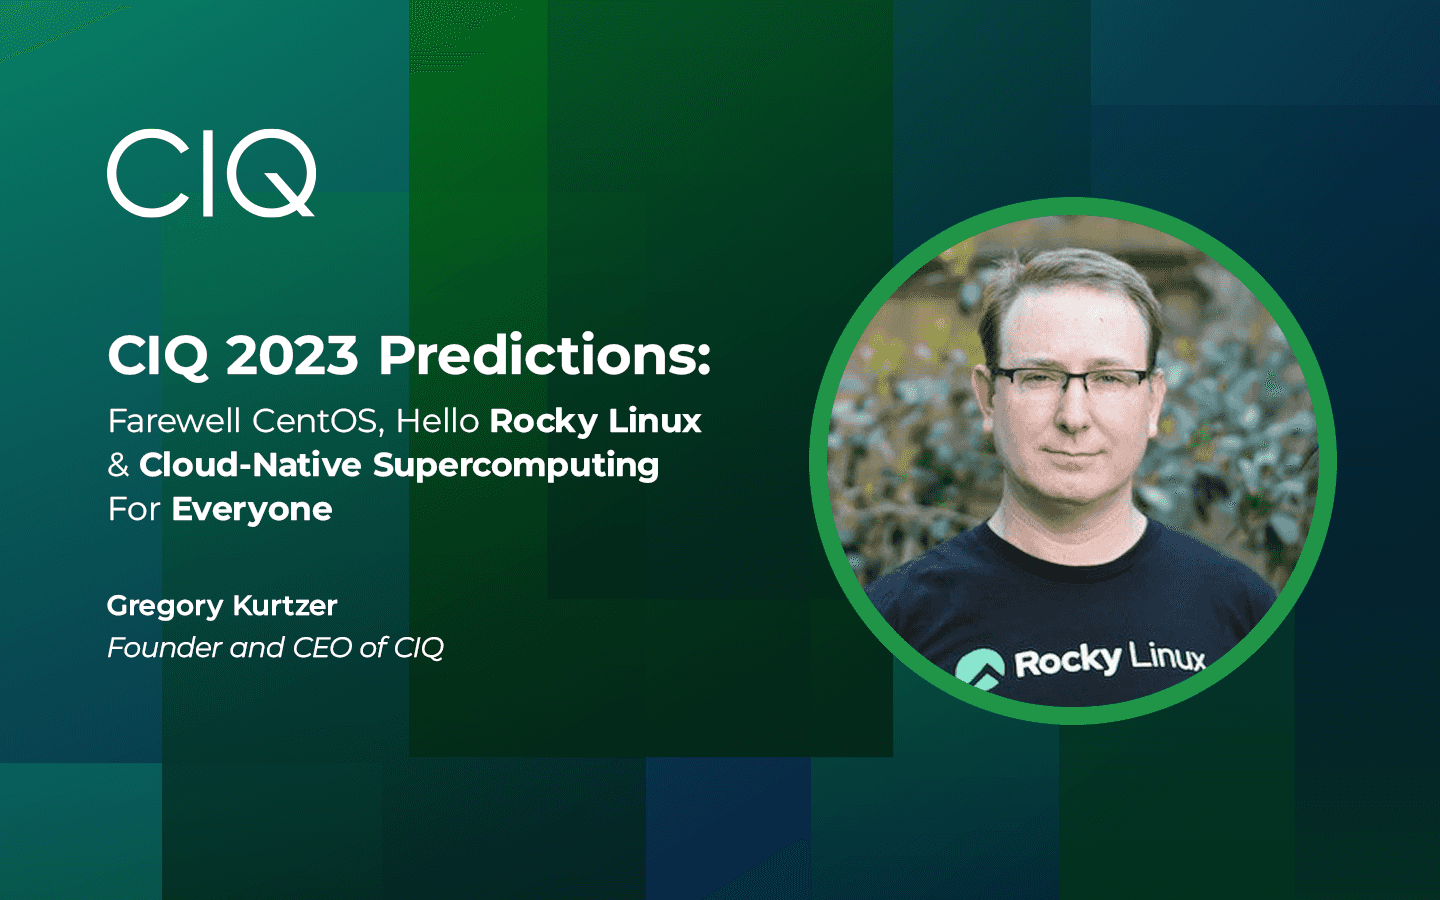 CIQ 2023 Predictions: Farewell CentOS, Hello Rocky Linux